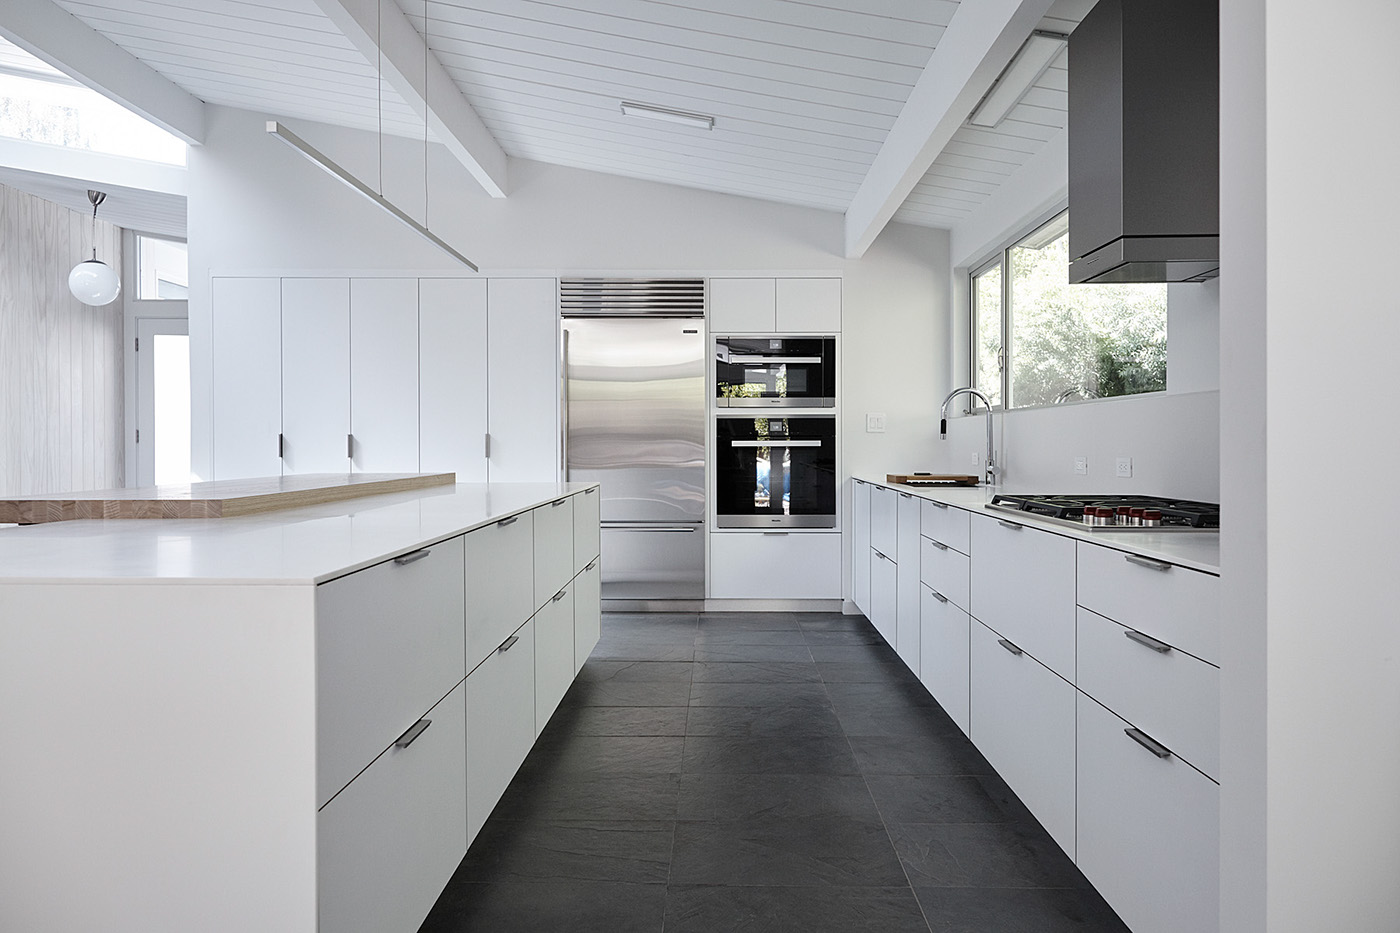 eichler mid century white kitchen white countertop system kitchen system design Kitchen island kitchen cabinets